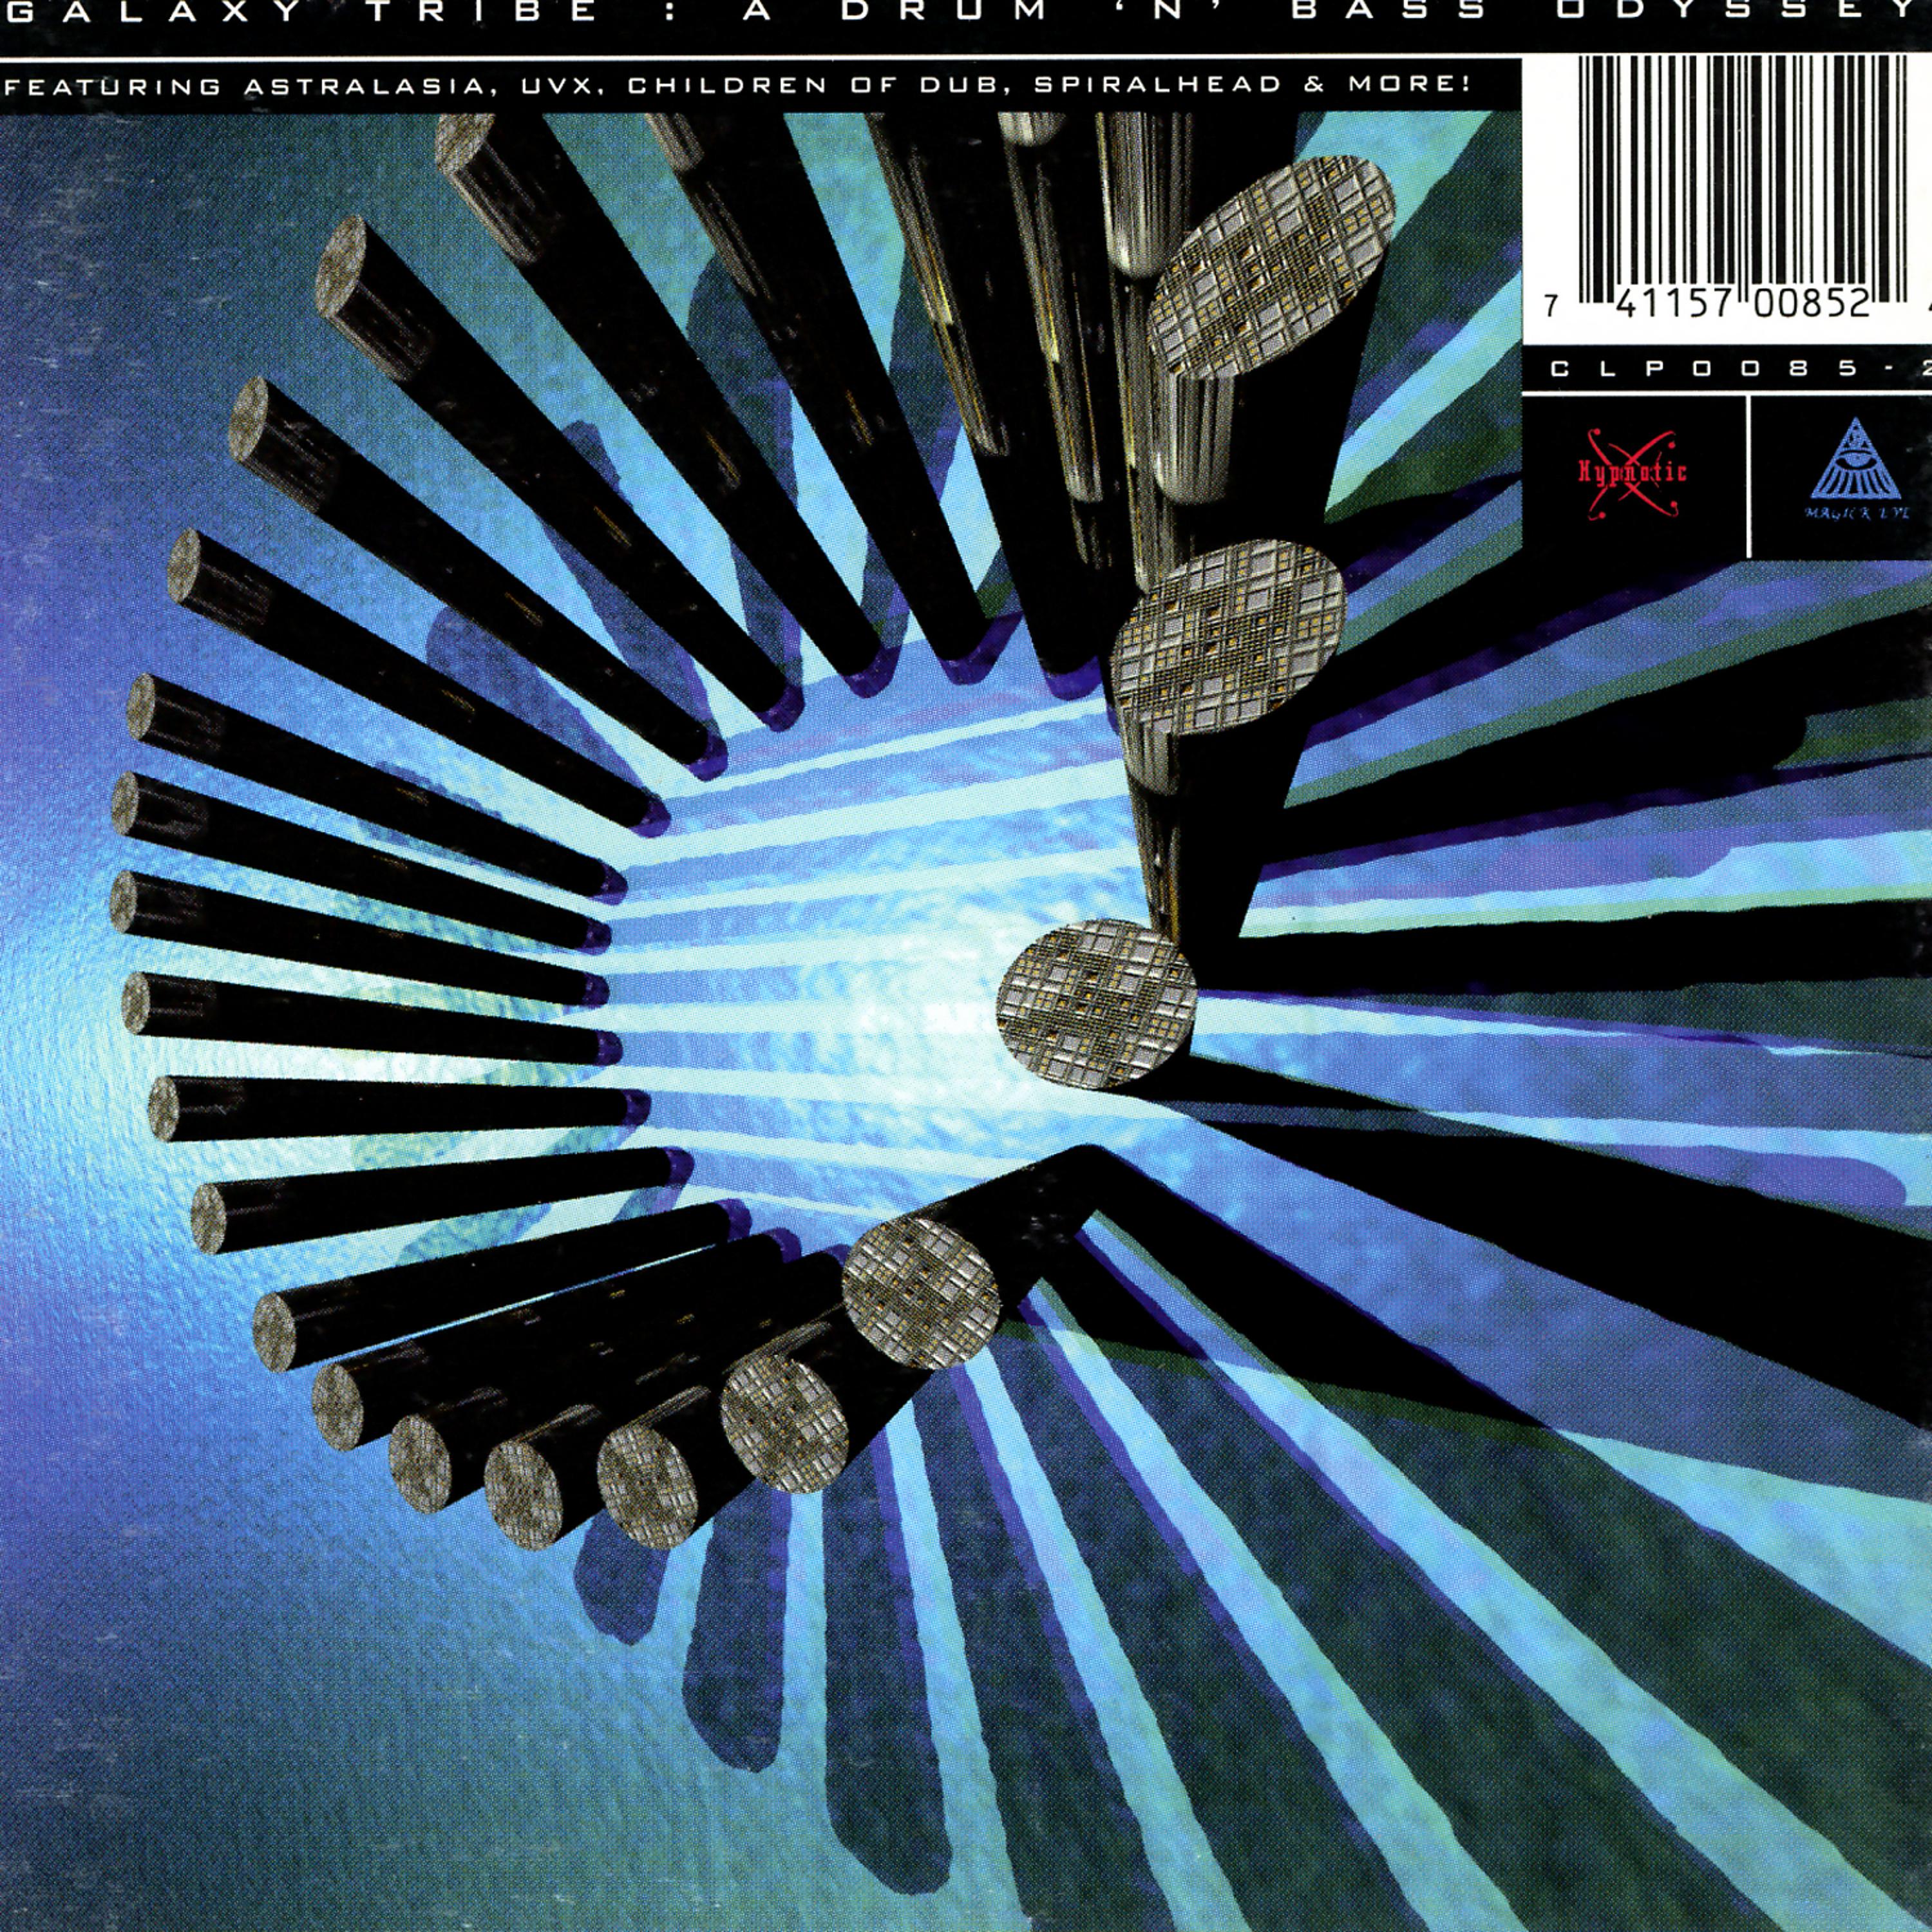 Постер альбома Galaxy Tribe: A Drum 'N' Bass Odyssey